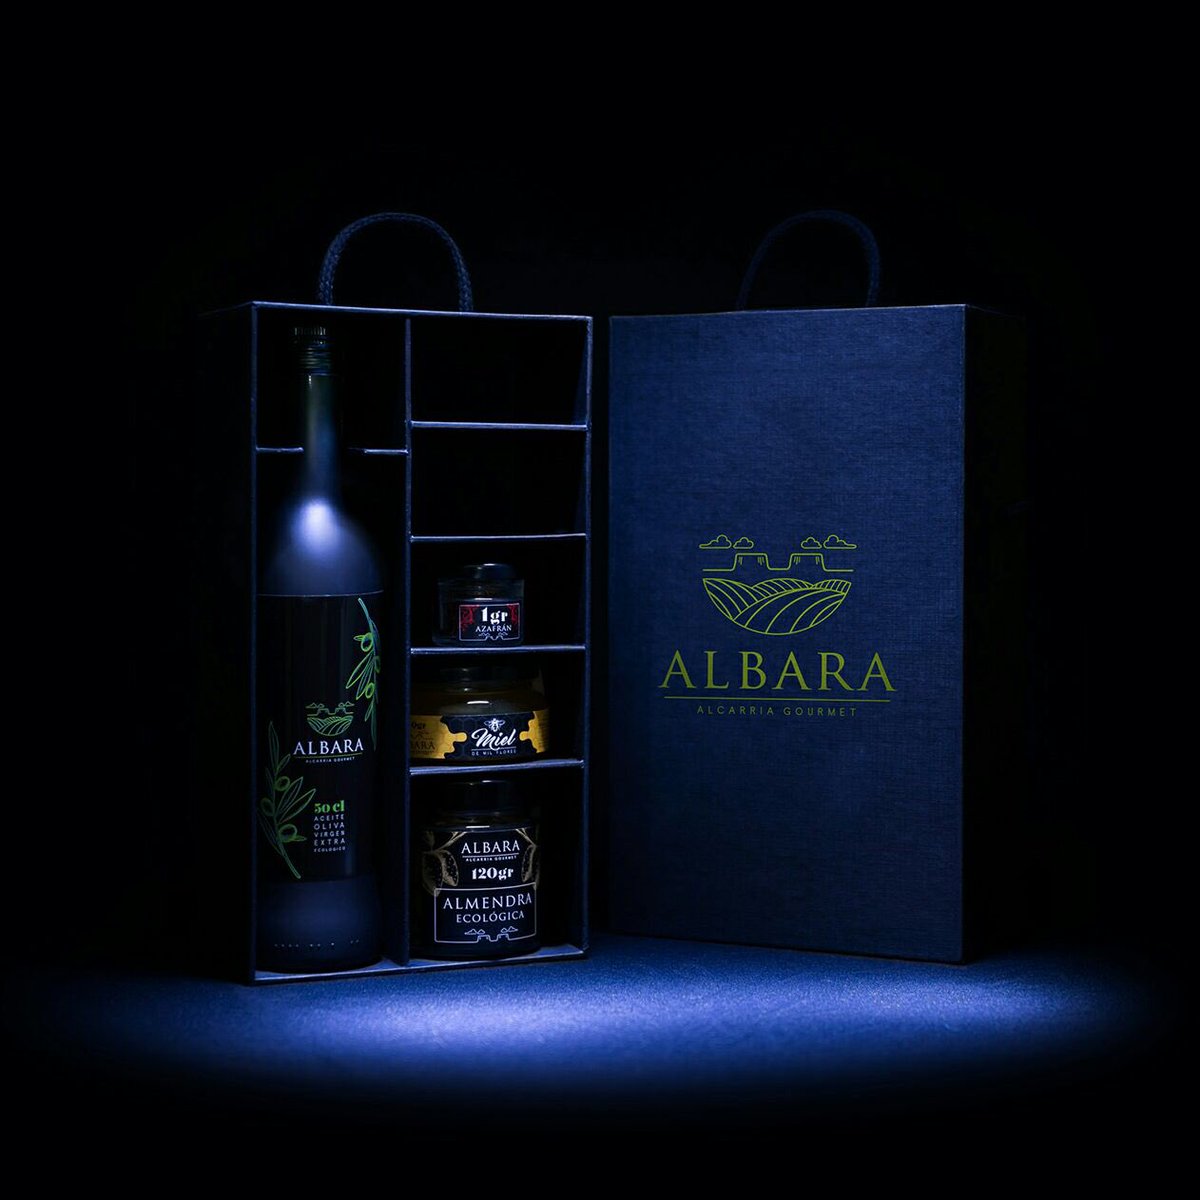 ¿Qué os parece nuestro packaging para estas fiestas? Enhorabuena a @AspadecCuenca por su trabajo 👏👏👏👏 #AlbaraAlcarriaGroumet #Regalacalidad